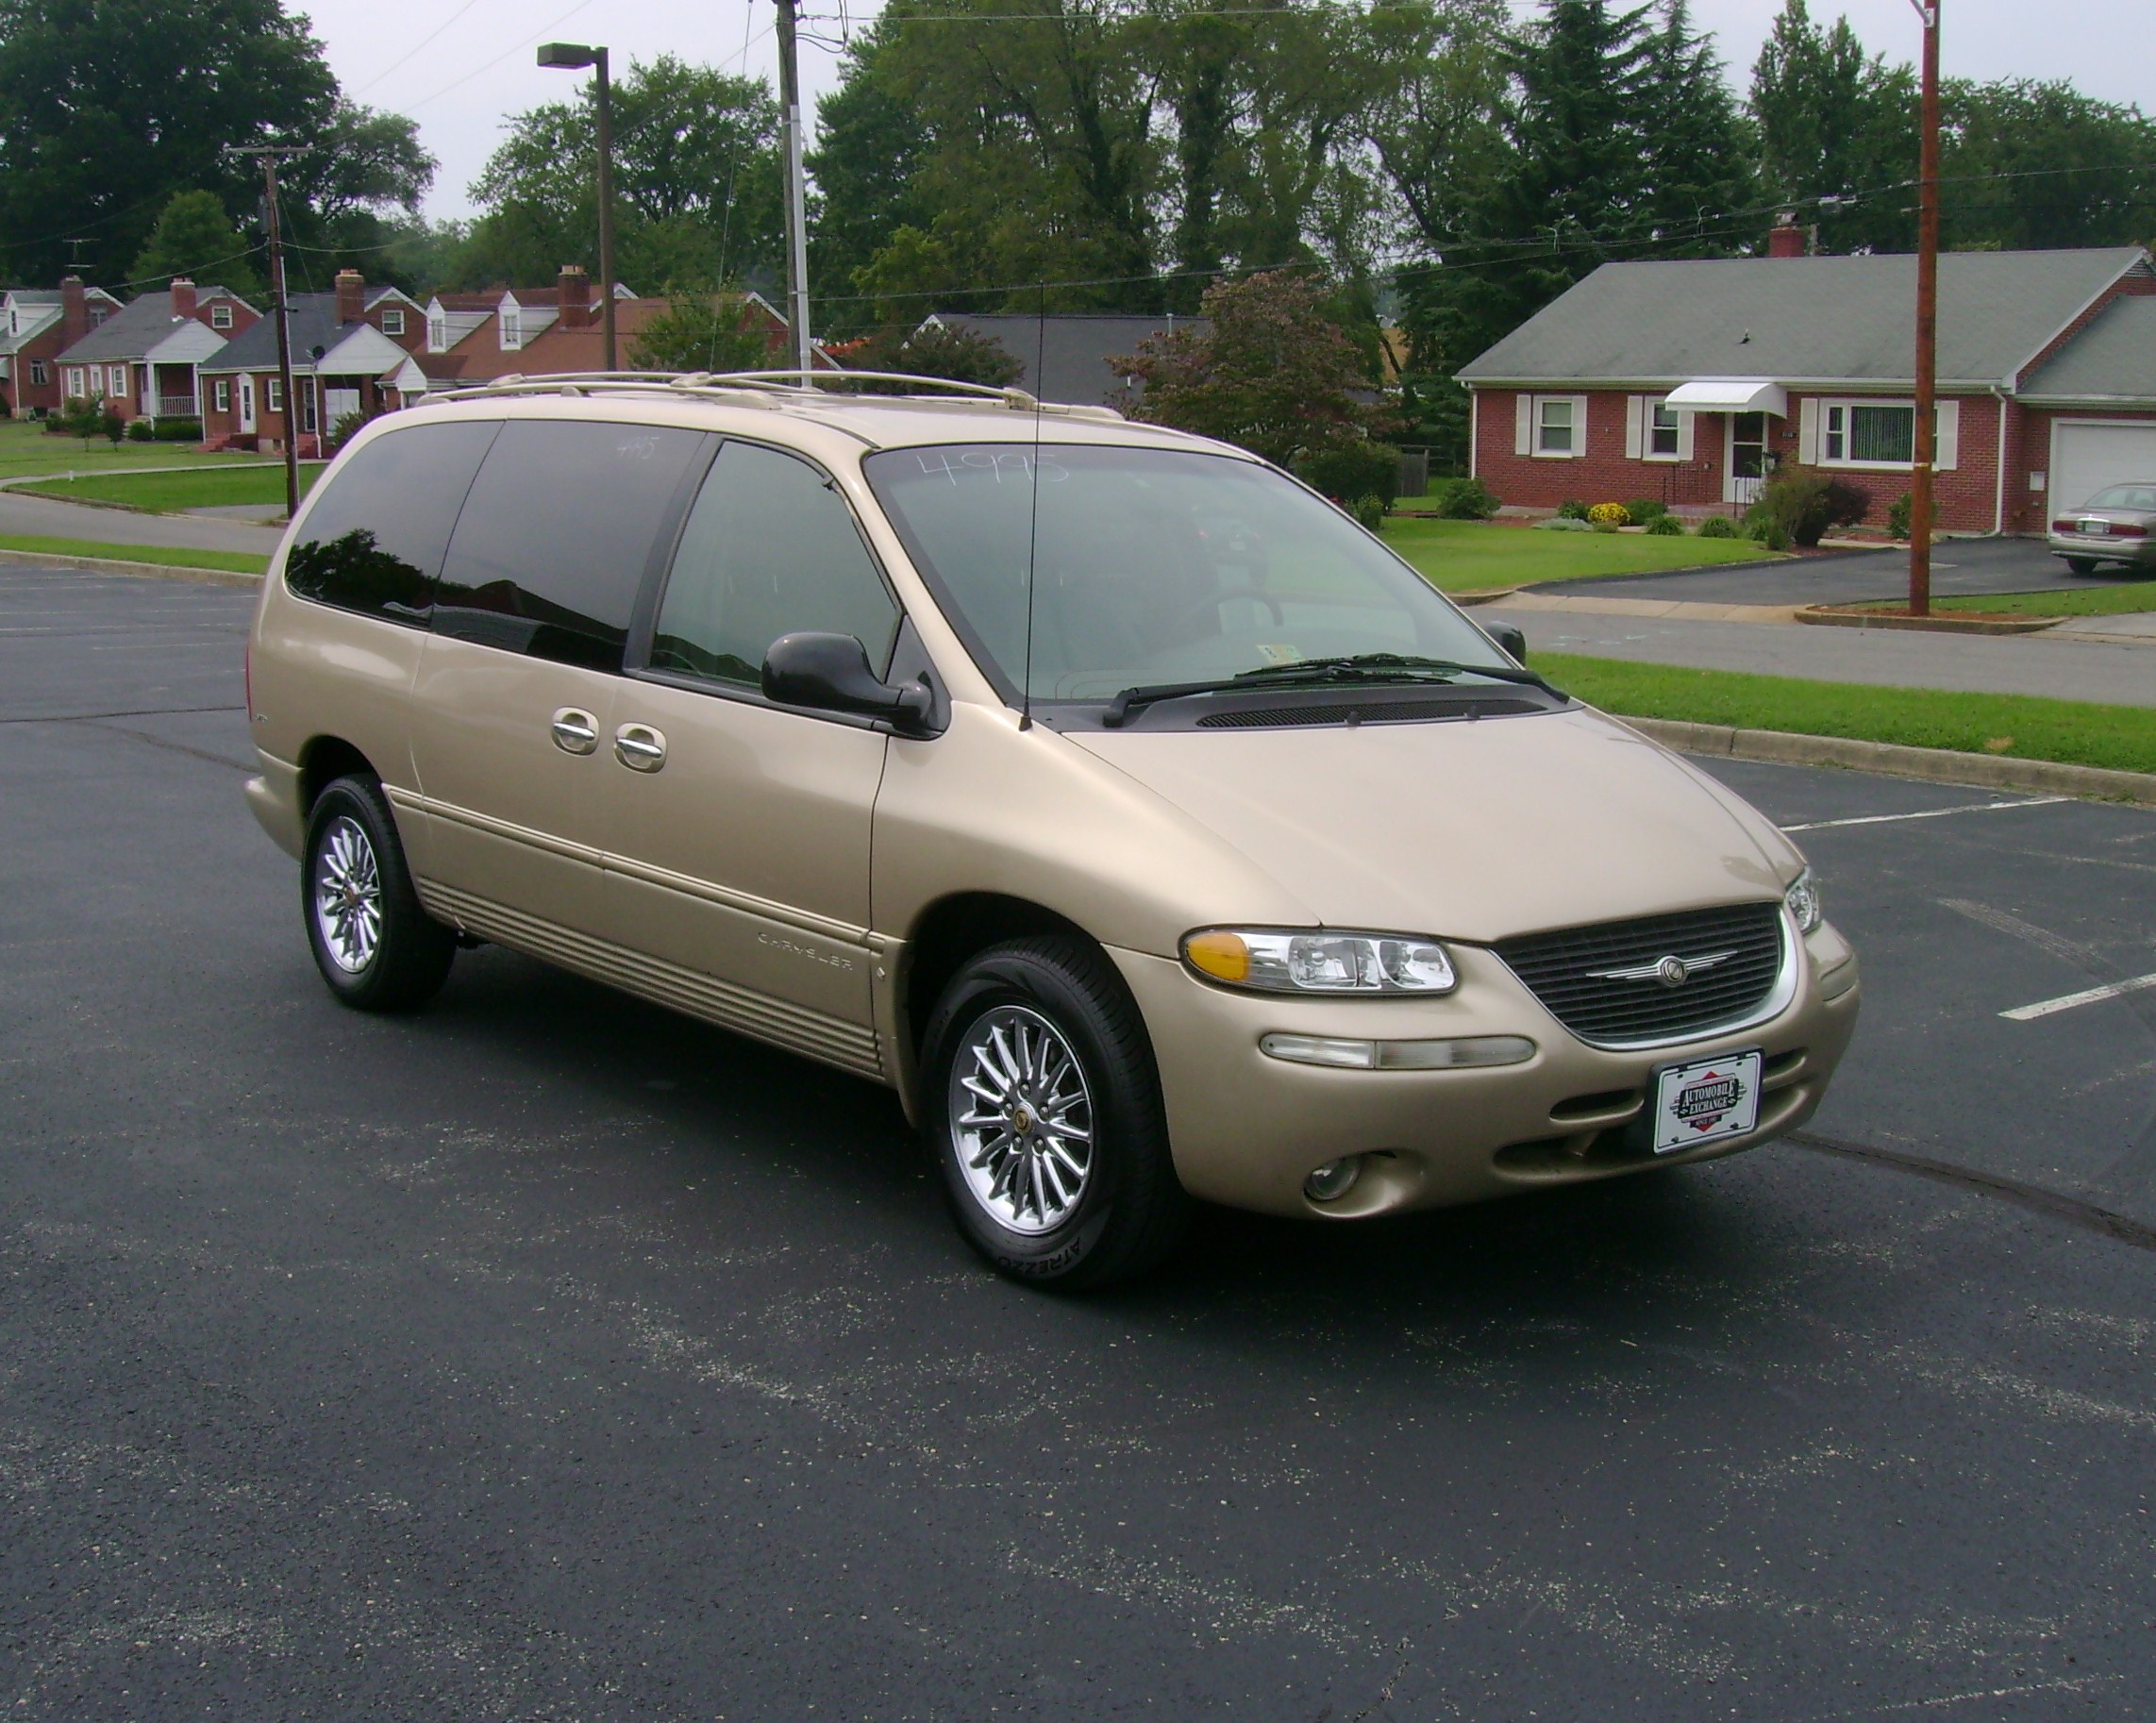 1999 chrysler minivan